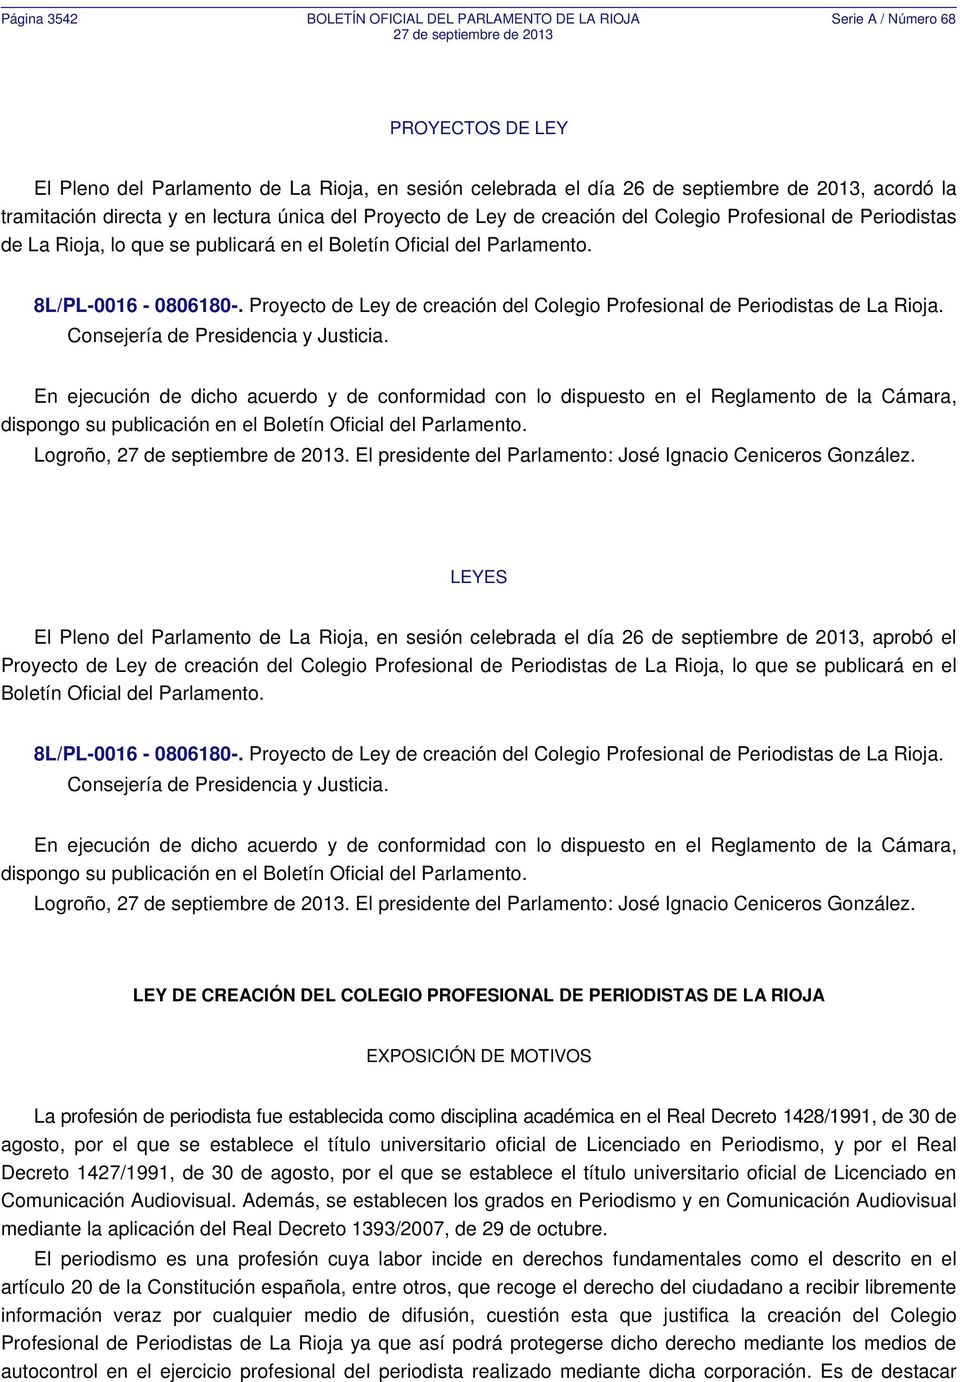 8L/PL-0016-0806180-. Proyecto de Ley de creación del Colegio Profesional de Periodistas de La Rioja. Consejería de Presidencia y Justicia.